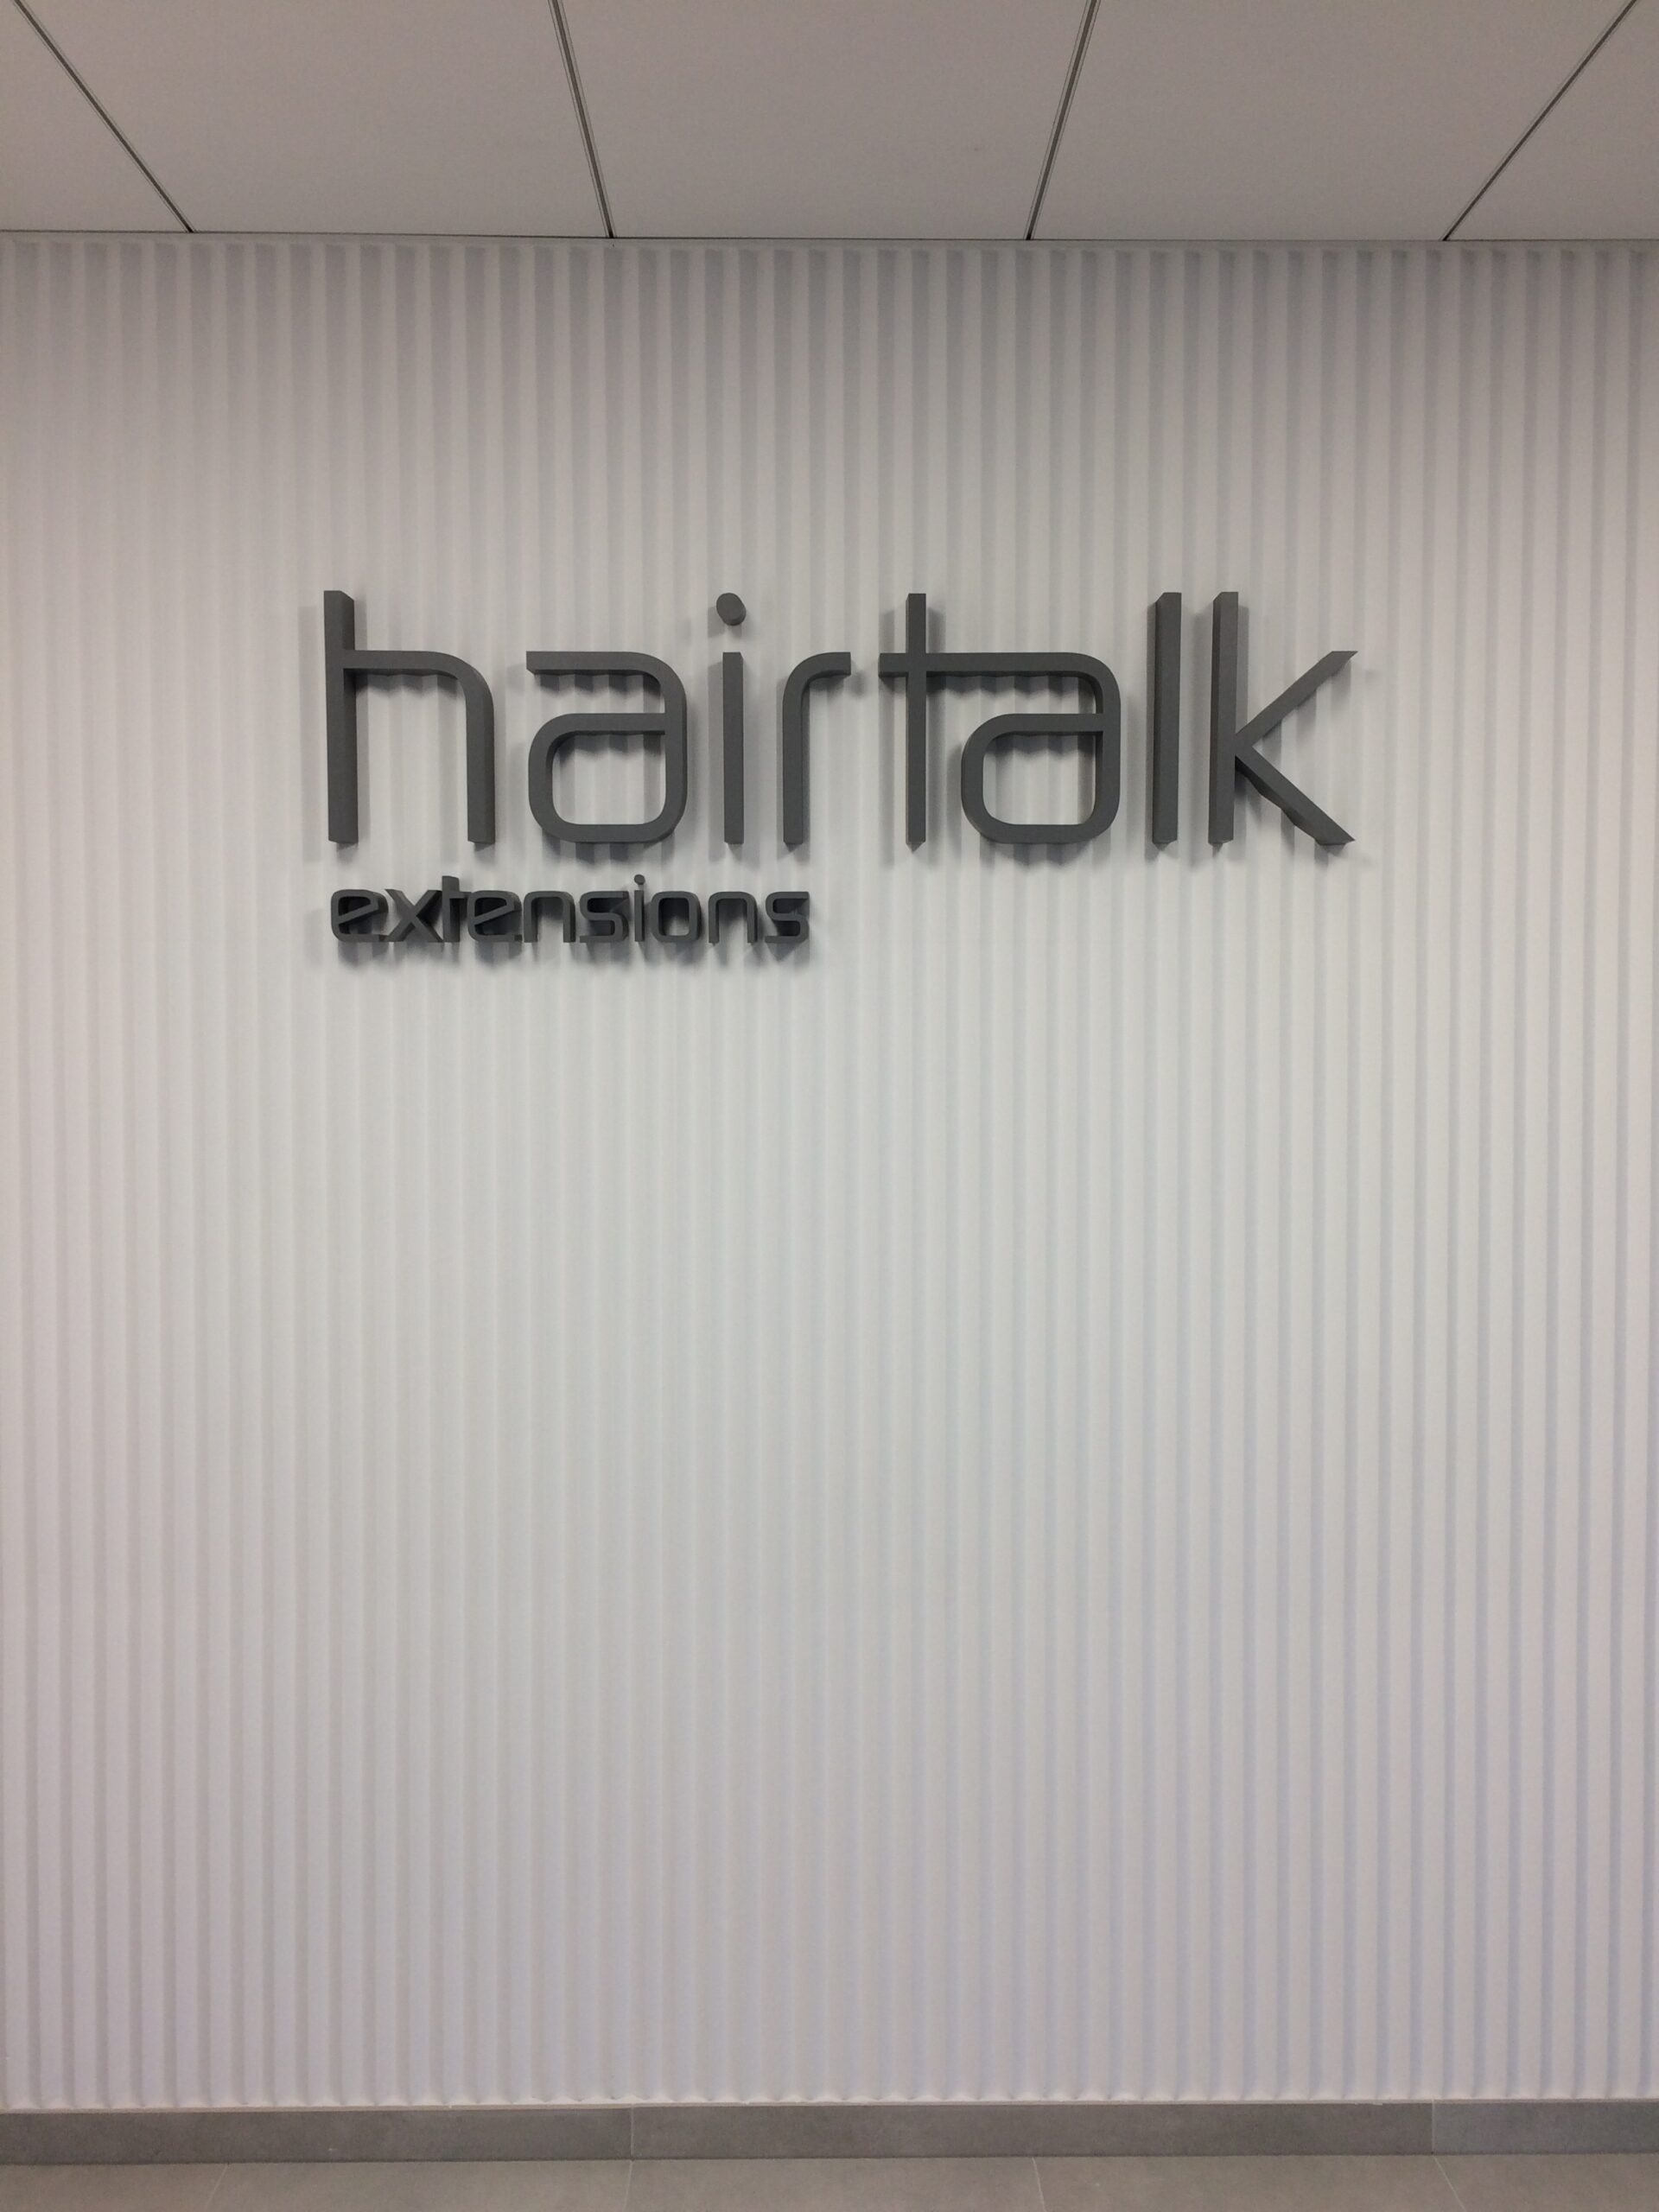 logotyp hairtalk extensions - szare litery blokowe duże i małe montowane na lamelkowej ścianie z trójkątnych wystających do przodu pionowych pasów.